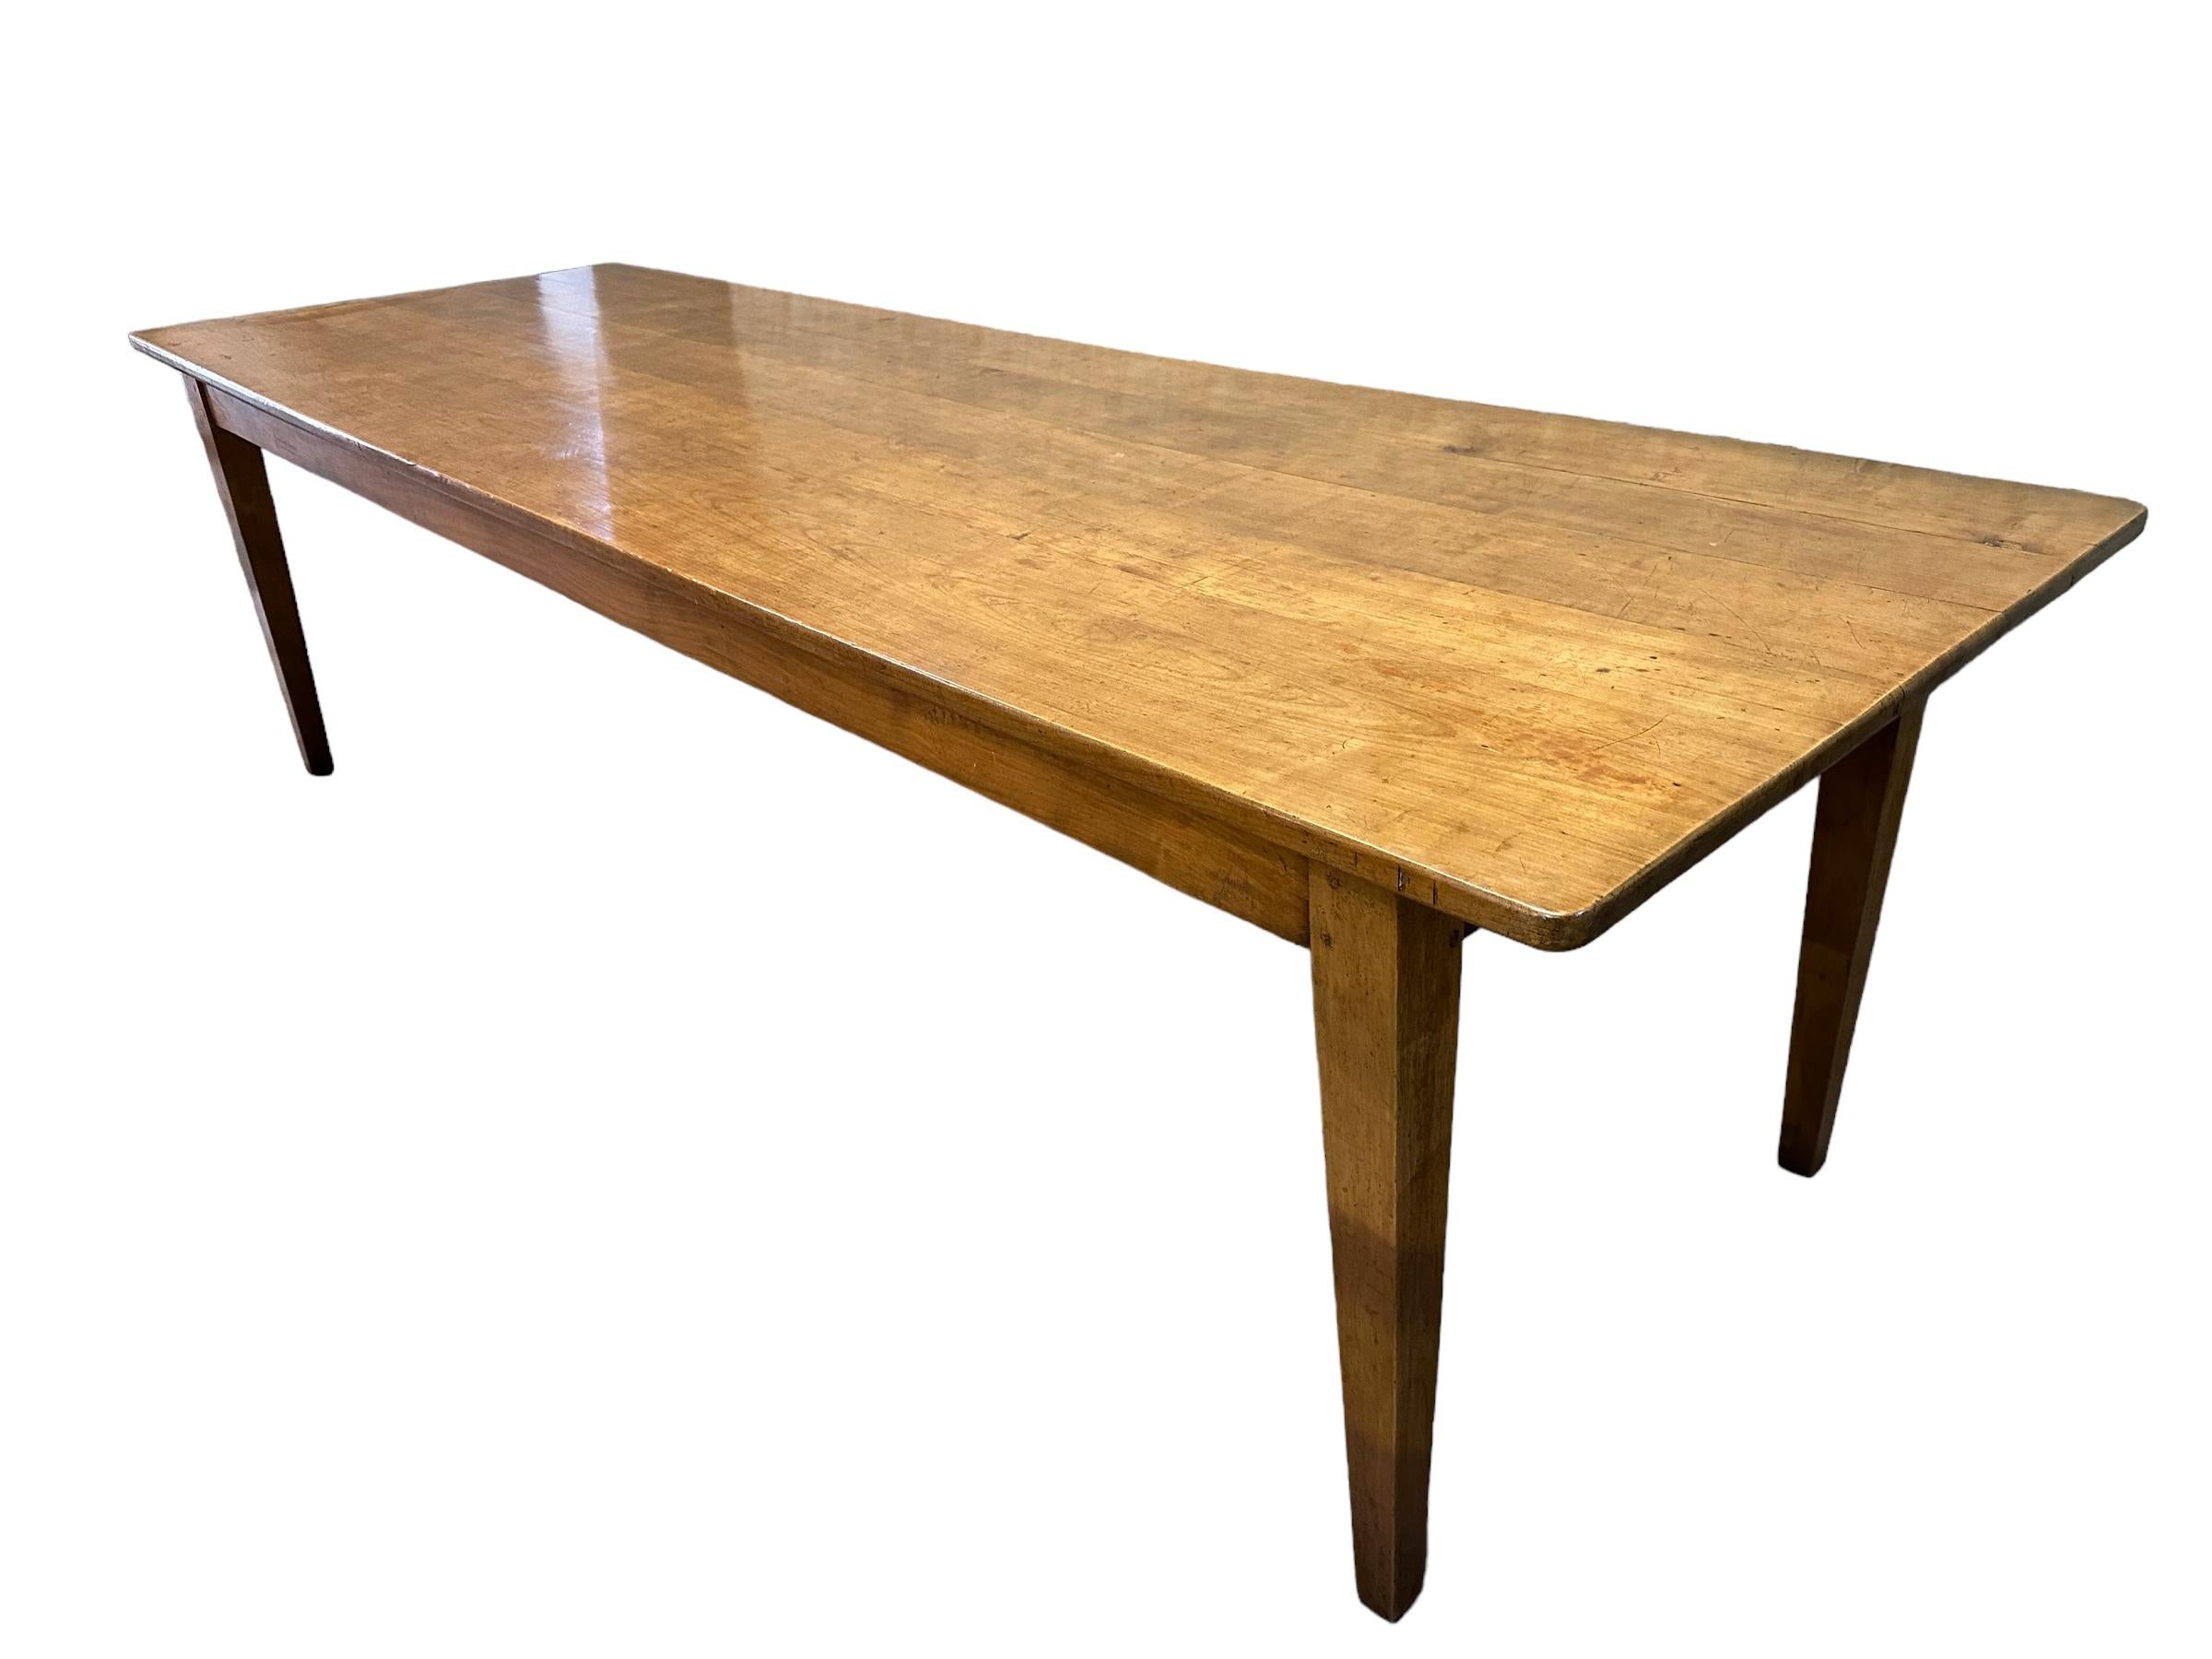 L'image montre une exquise table en cerisier antique avec des pieds effilés et une base solide. La table présente une belle patine qui ajoute du caractère et de la profondeur à son aspect général. La couleur étonnante du bois de cerisier est mise en